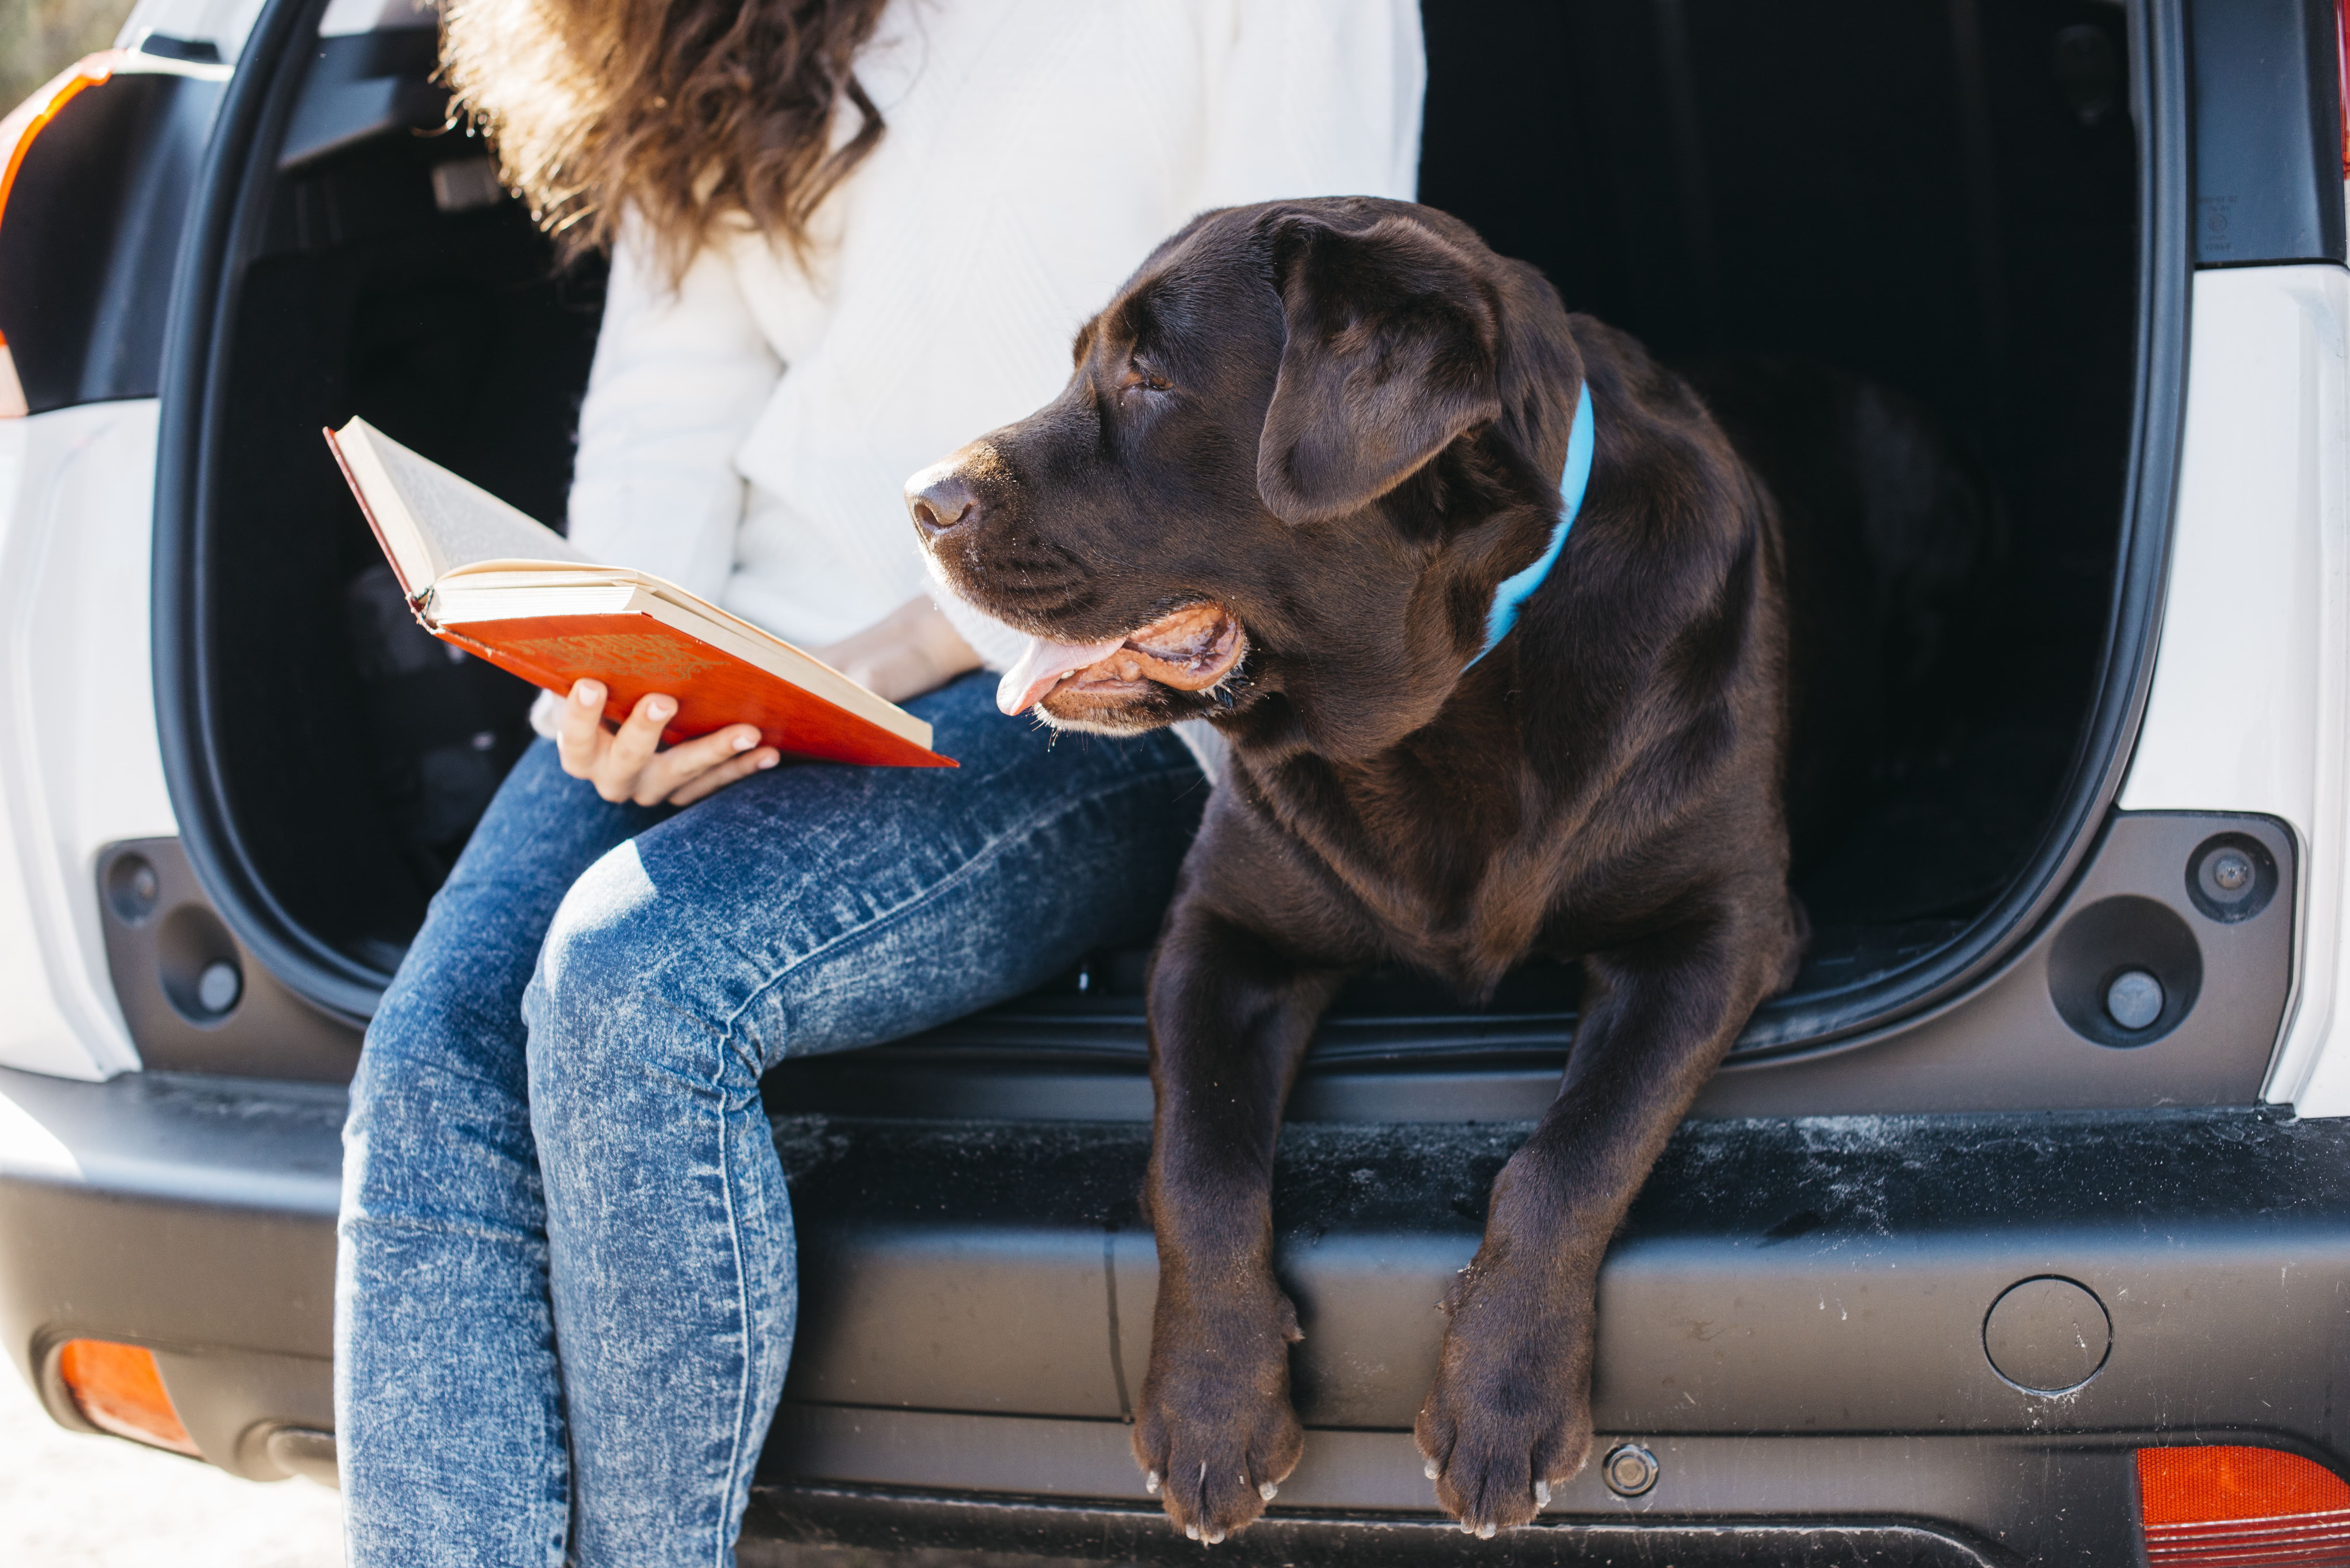 Semana Santa: 4 recomendaciones para viajar seguros con mascotas